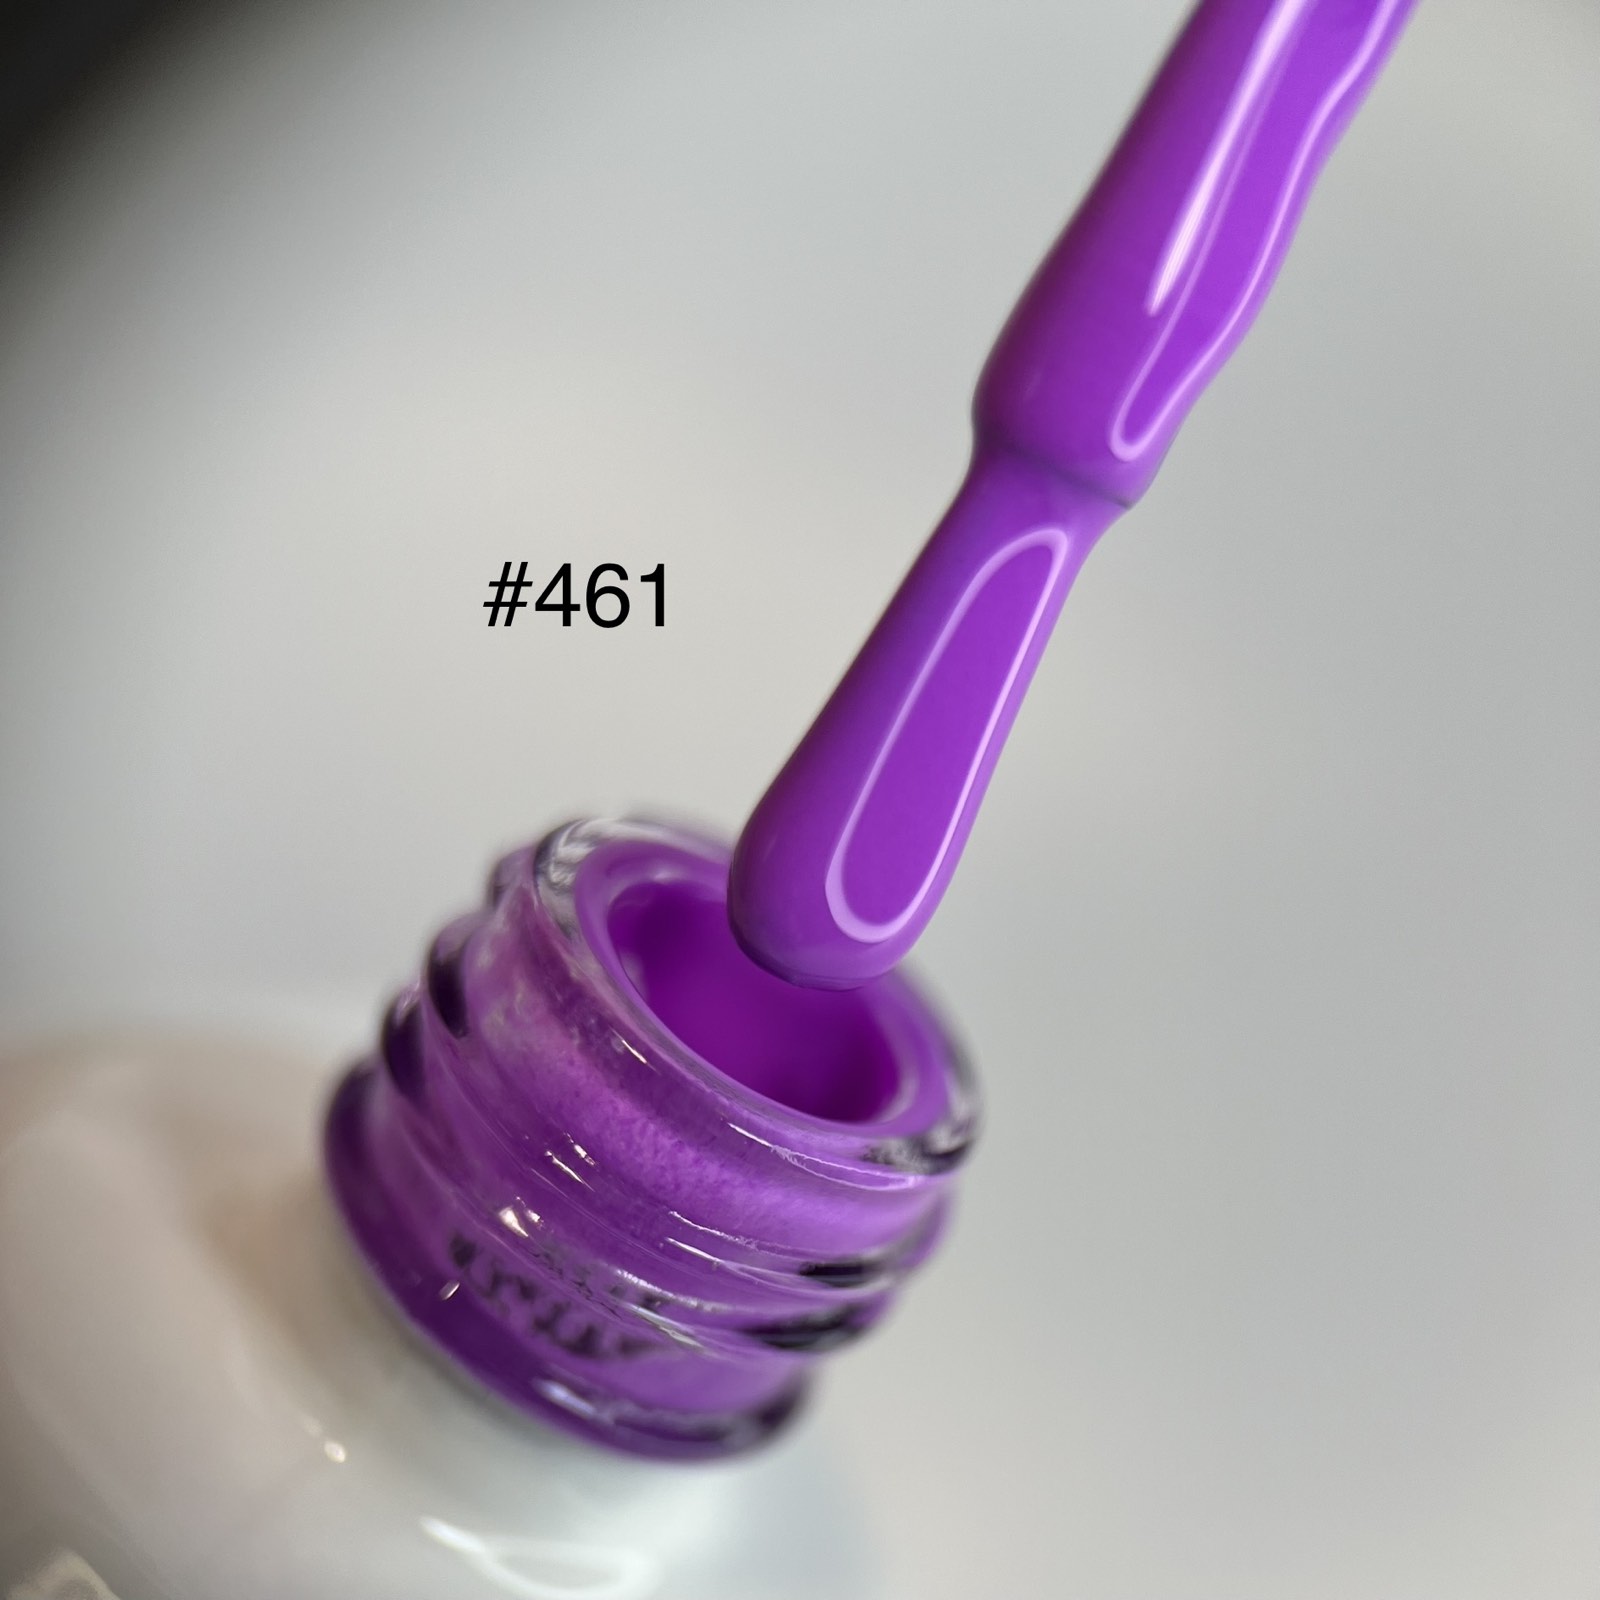 Purple Colors Palette 15 ML